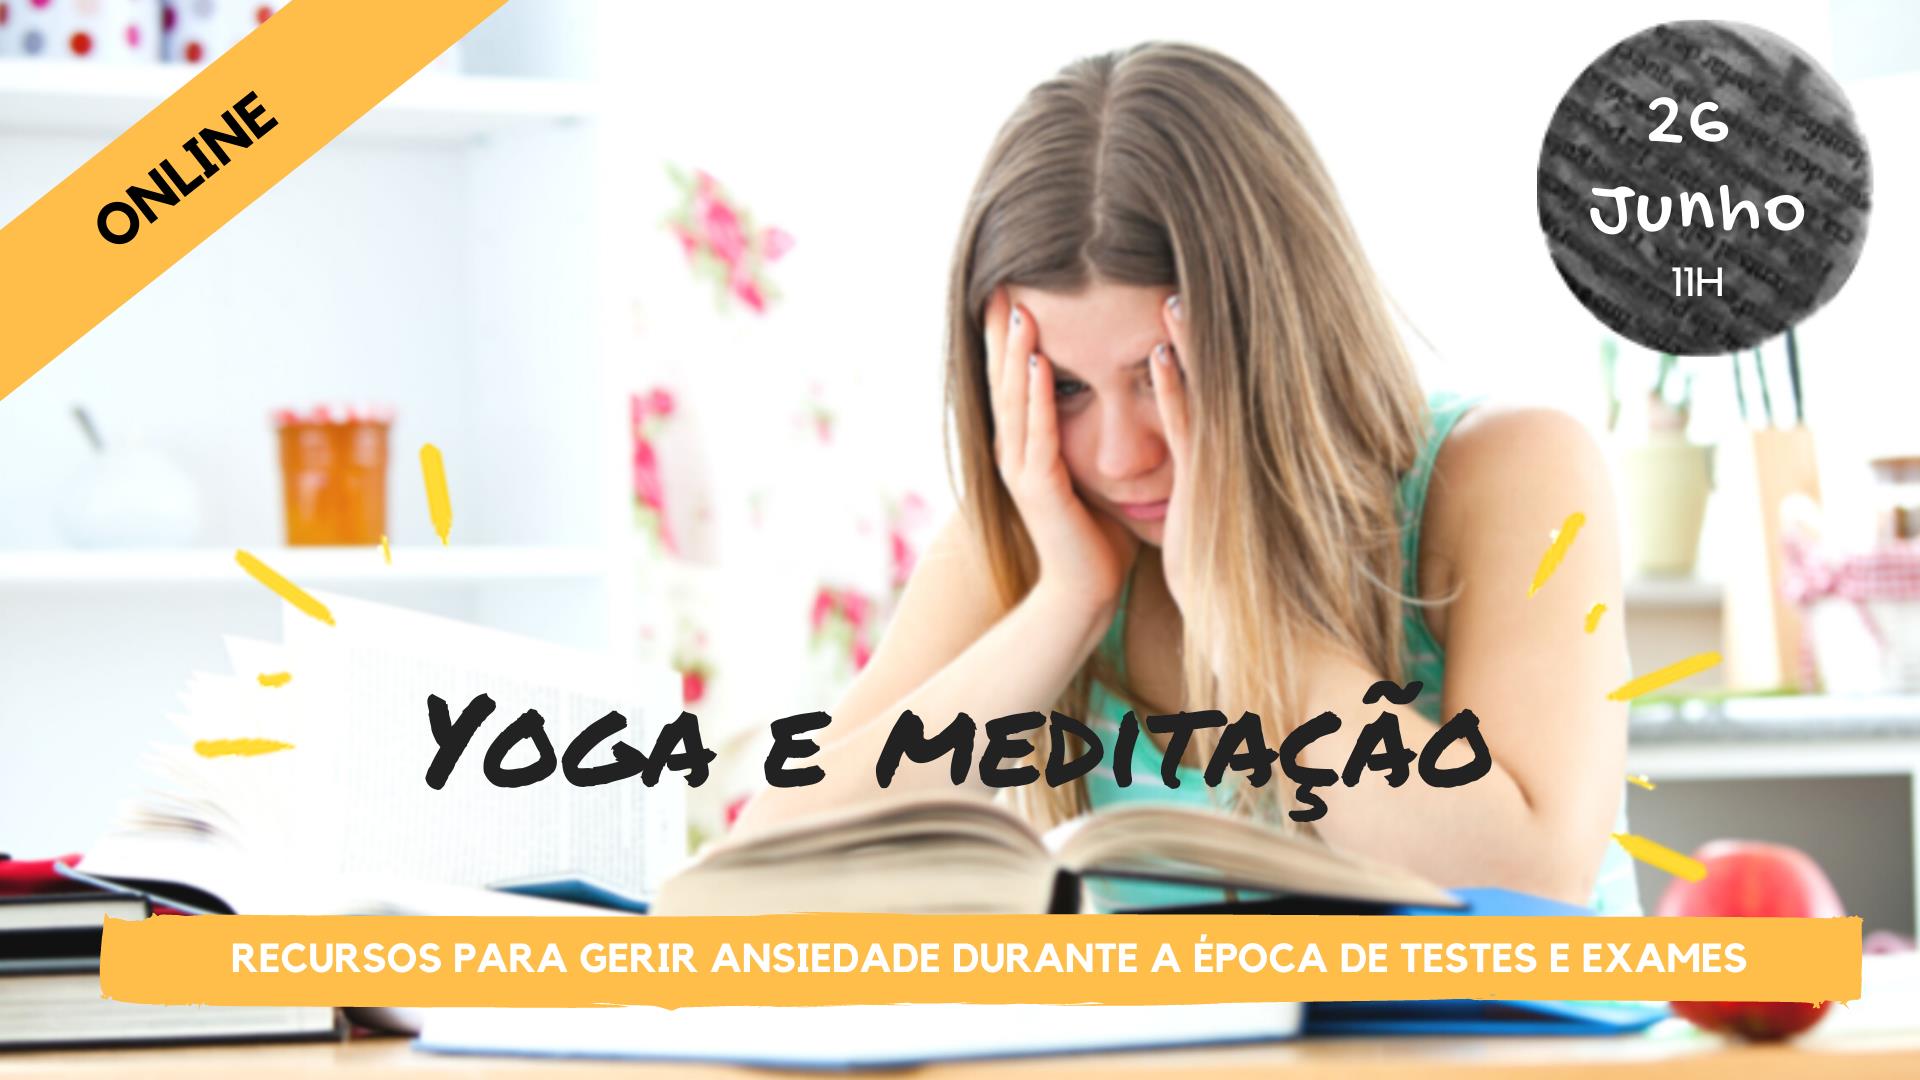 Oficina de Yoga e Meditação: recursos para gerir ansiedade durante a época de testes/exames